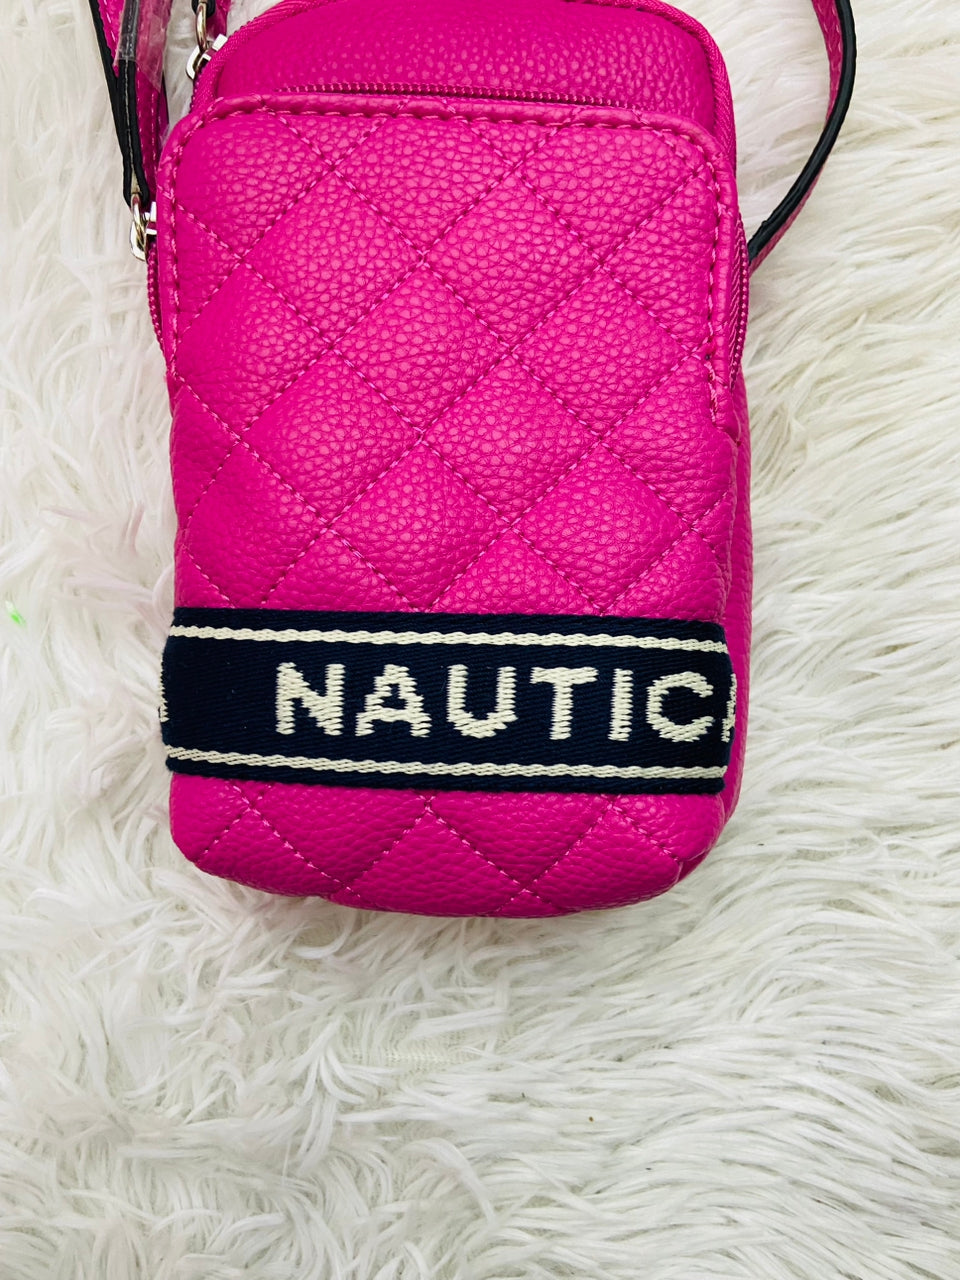 Cartera Nautica original con dos compartimentos y otro bolsillo adentro de color rosado fucsia con diseño de raya negra y letras NAUTICA en blanco al